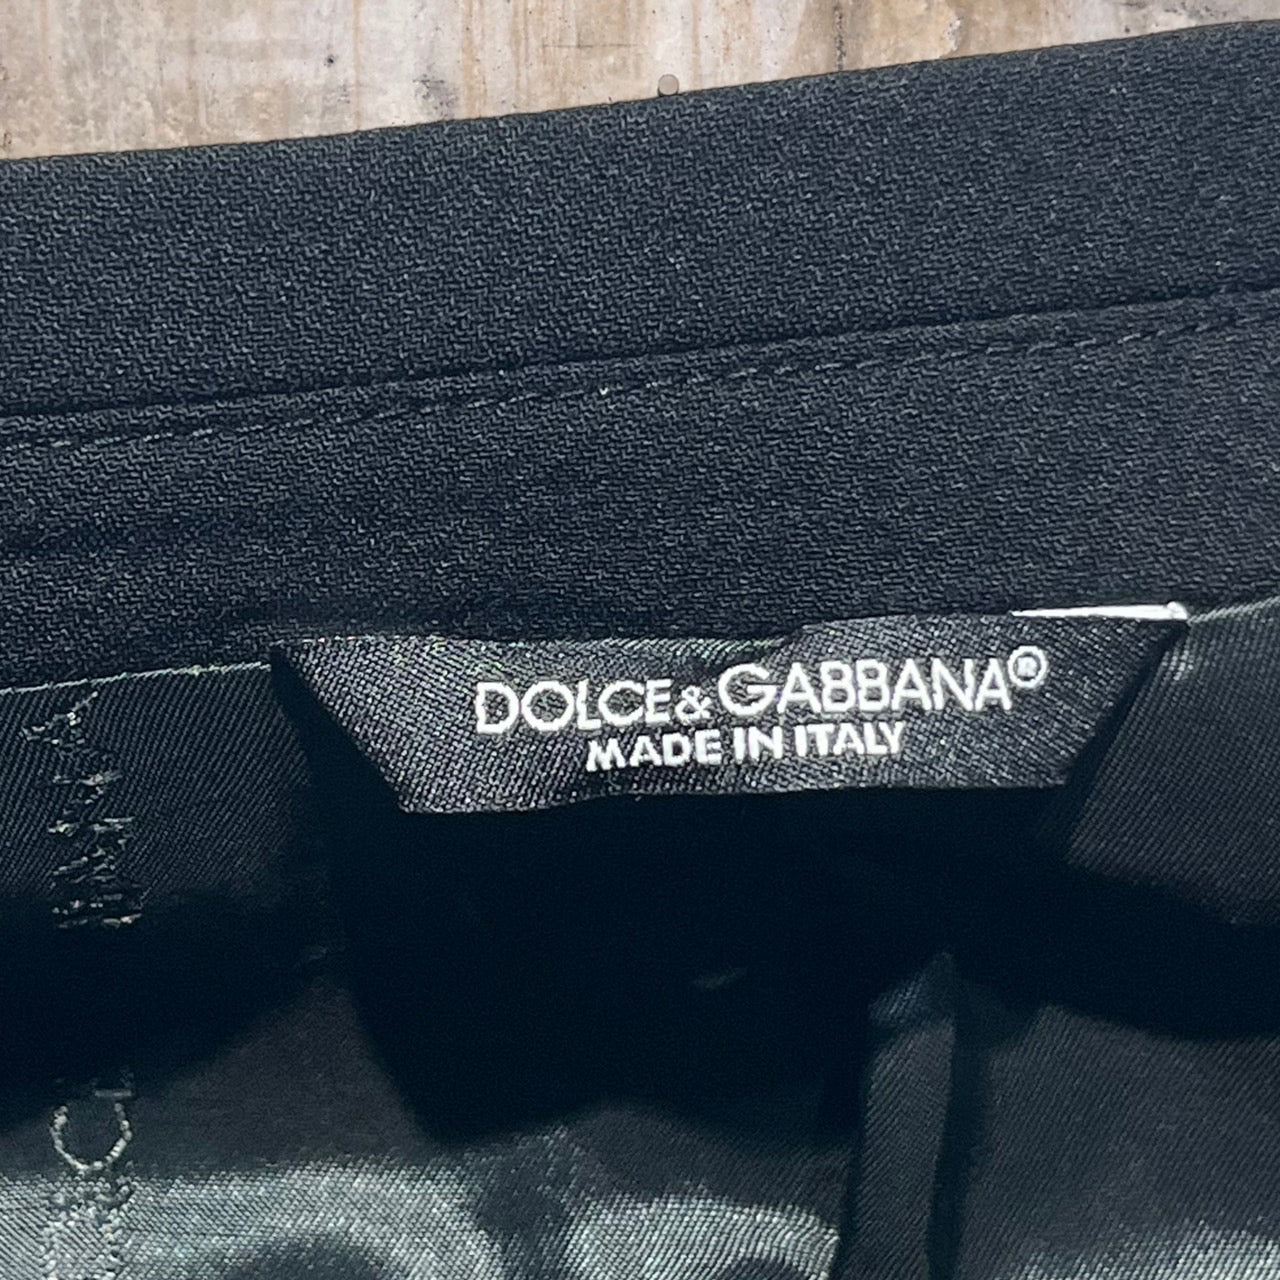 DOLCE&GABBANA(ドルチェ&ガッバーナドルガバ) セットアップジャケット 54(XXLサイズ程度) ブラック